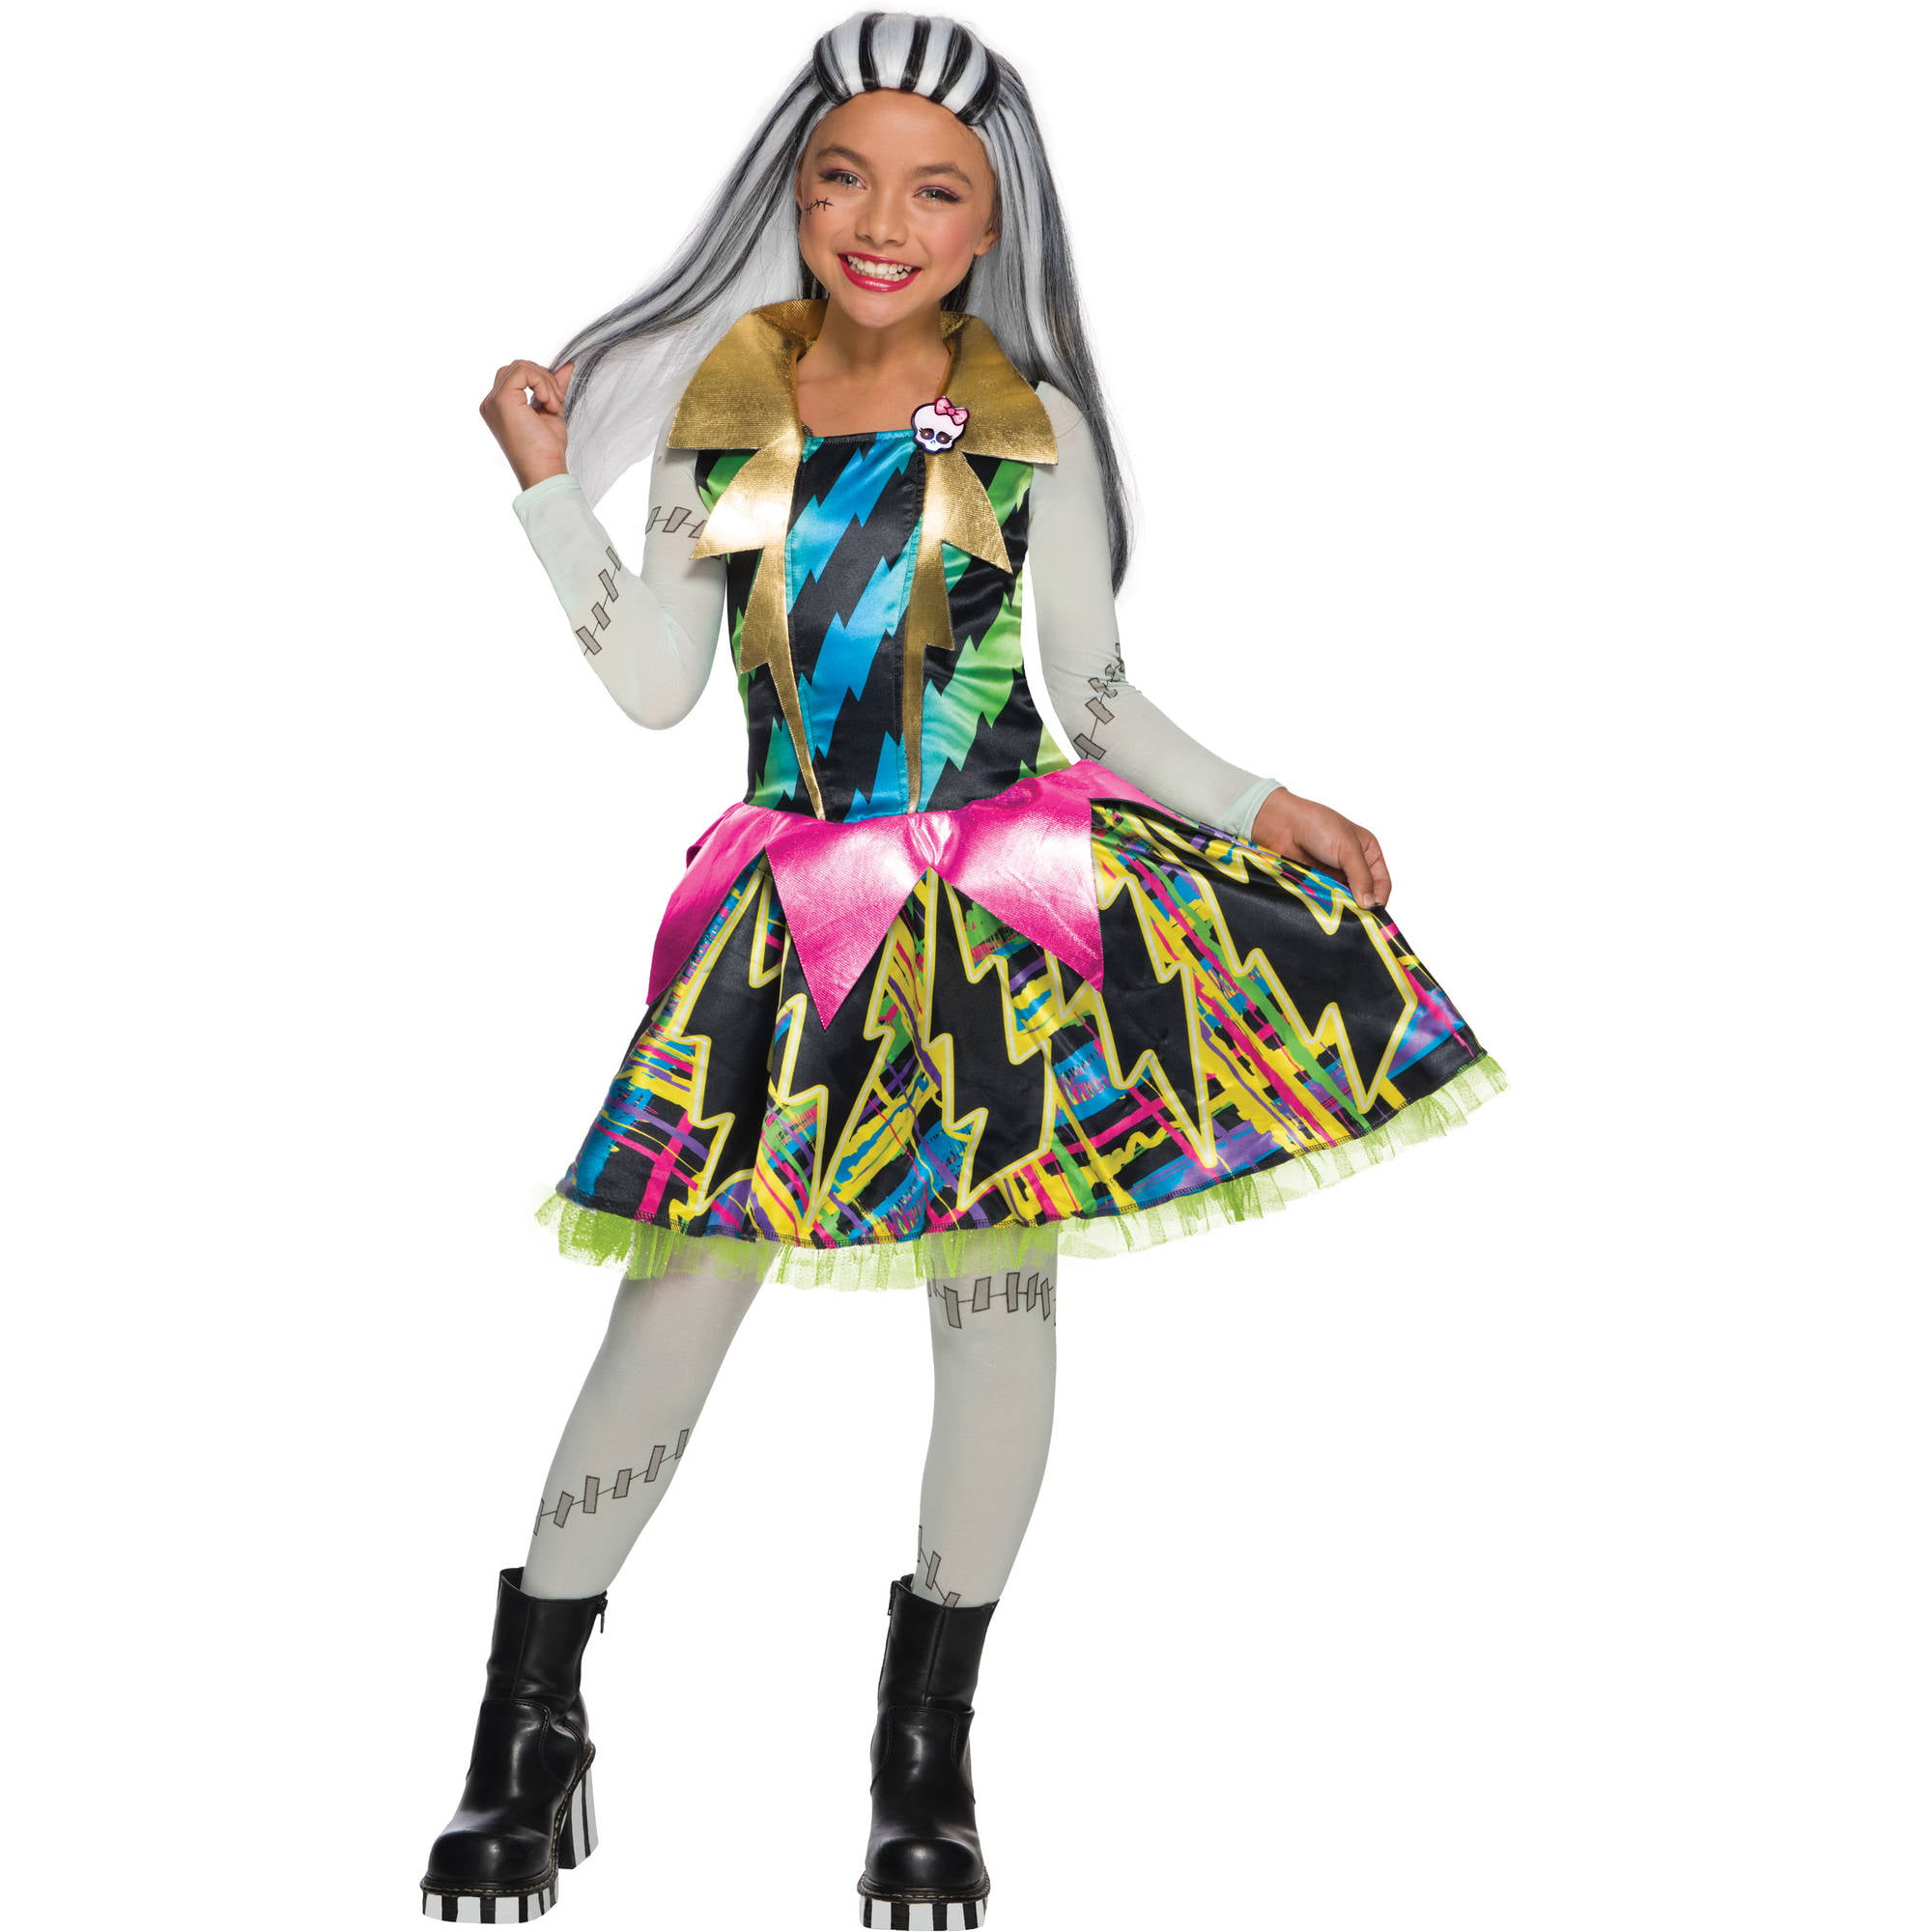 Frankie Stein Child's Costume, Medium (8-10) - Walmart.com